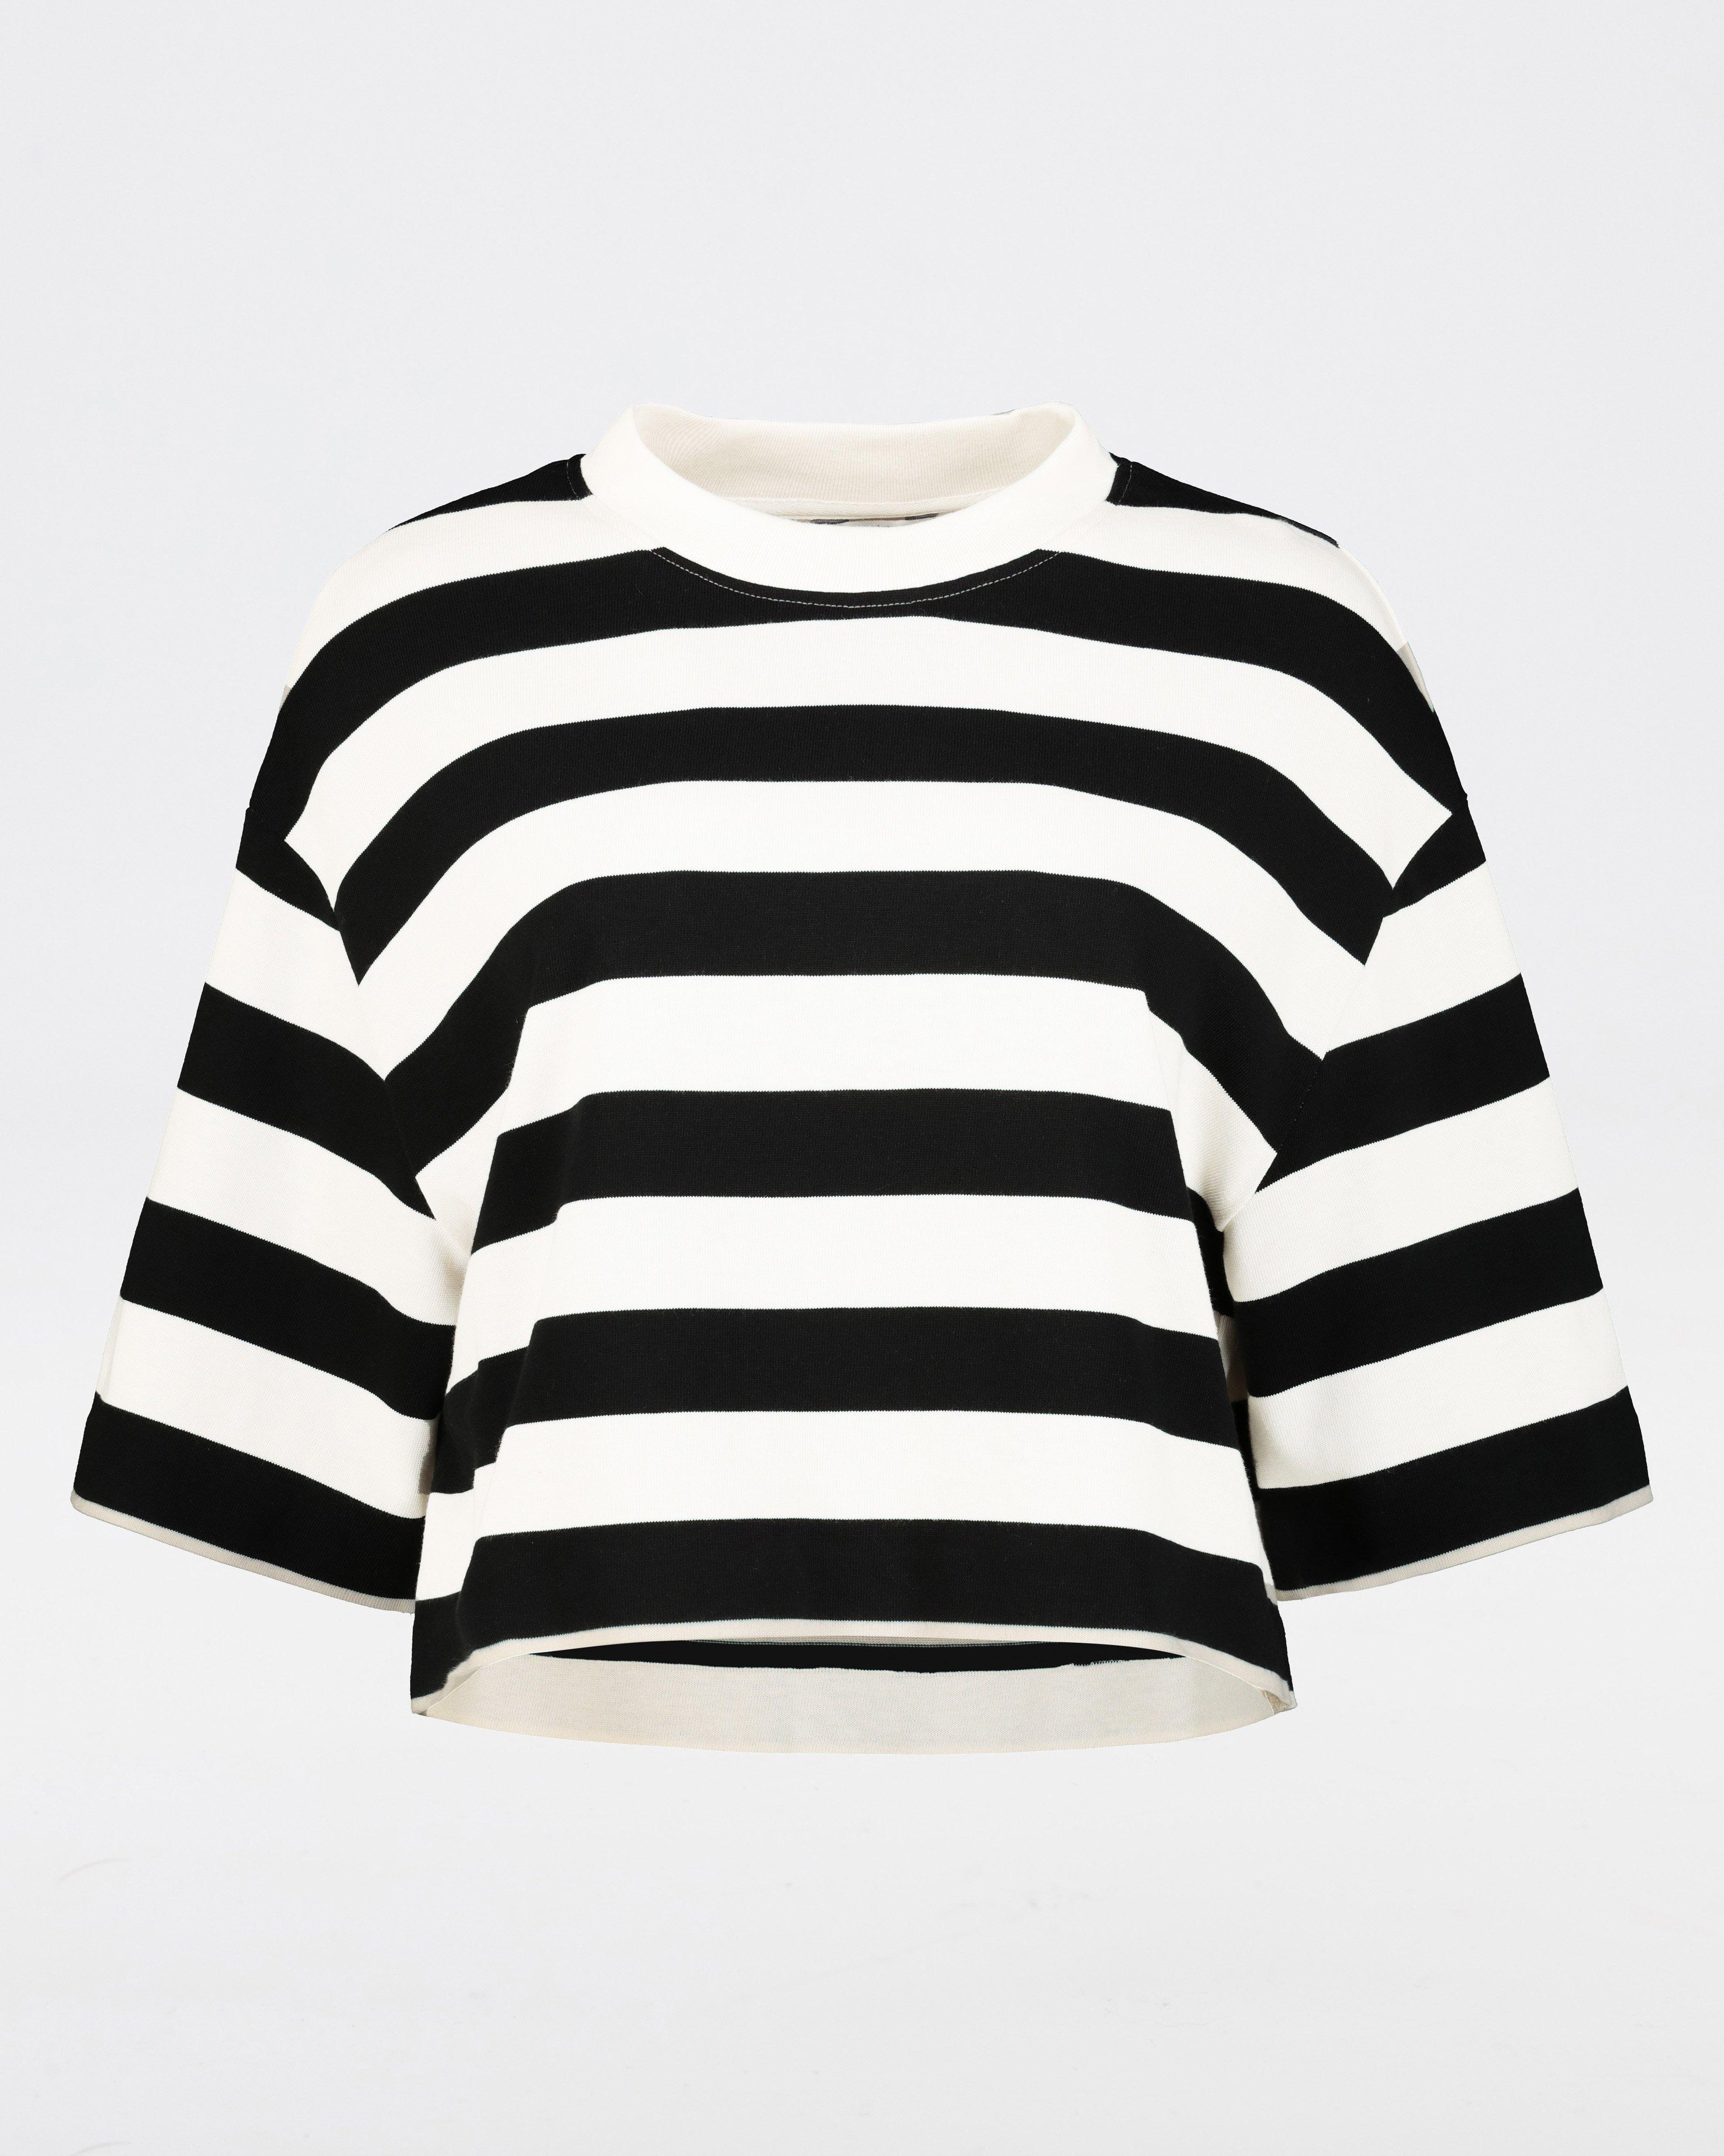 Aneko Stripe Knit Top -  Black